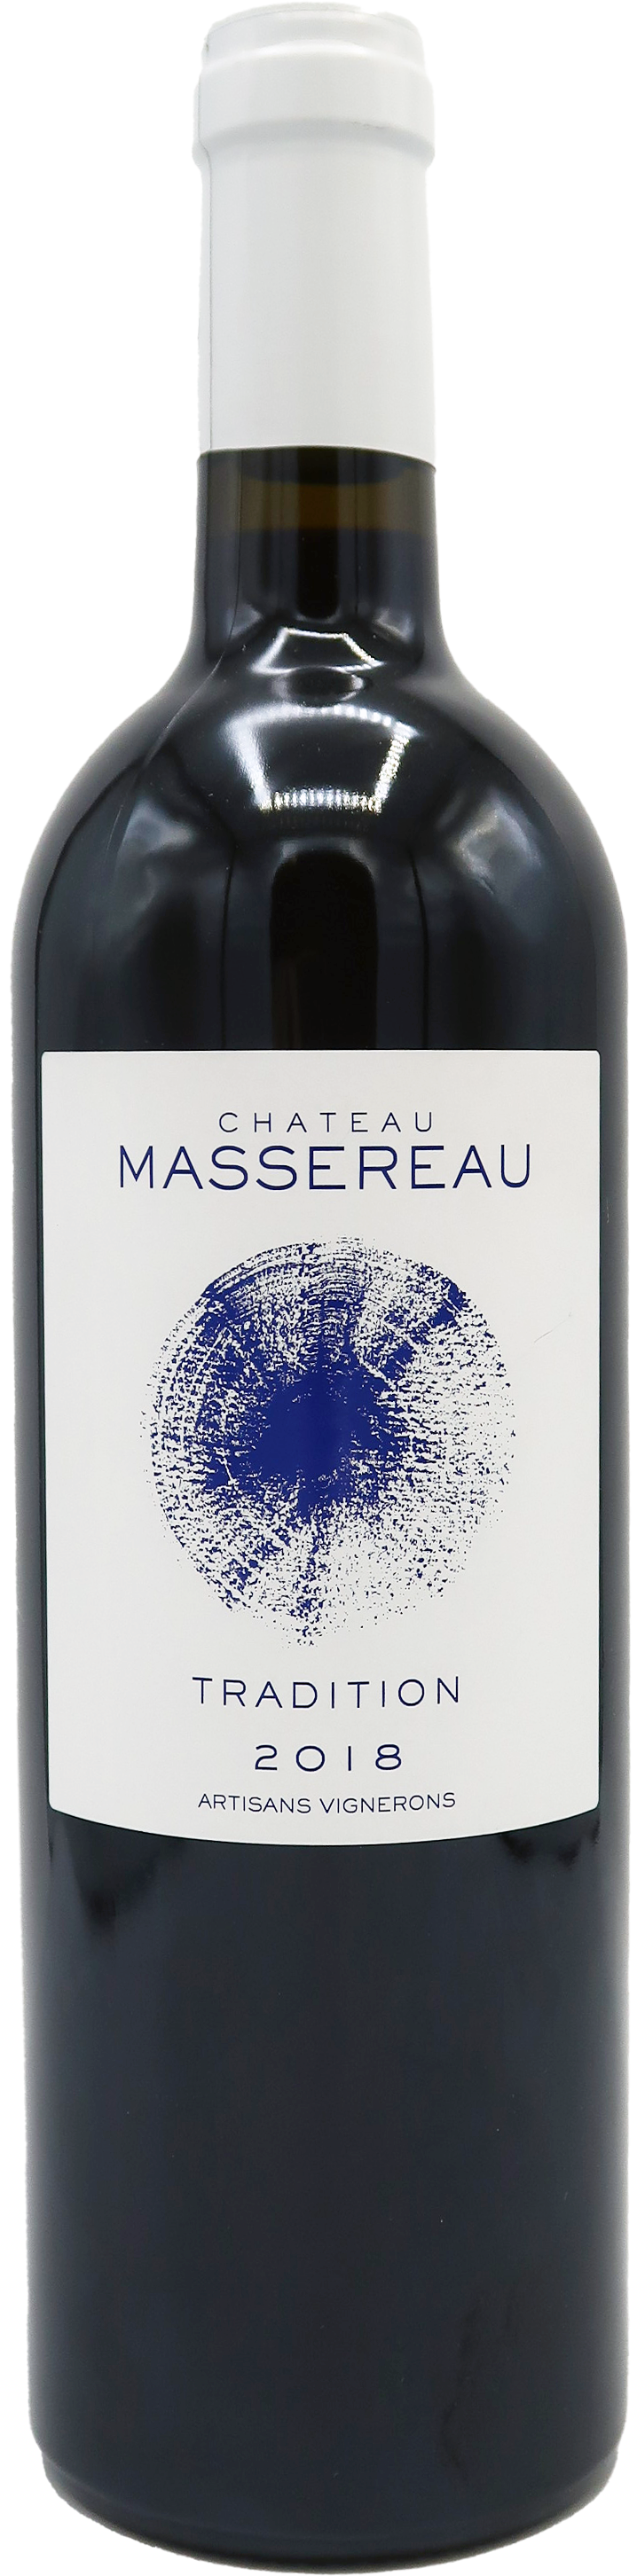 Tradition 2018 - Château Massereau